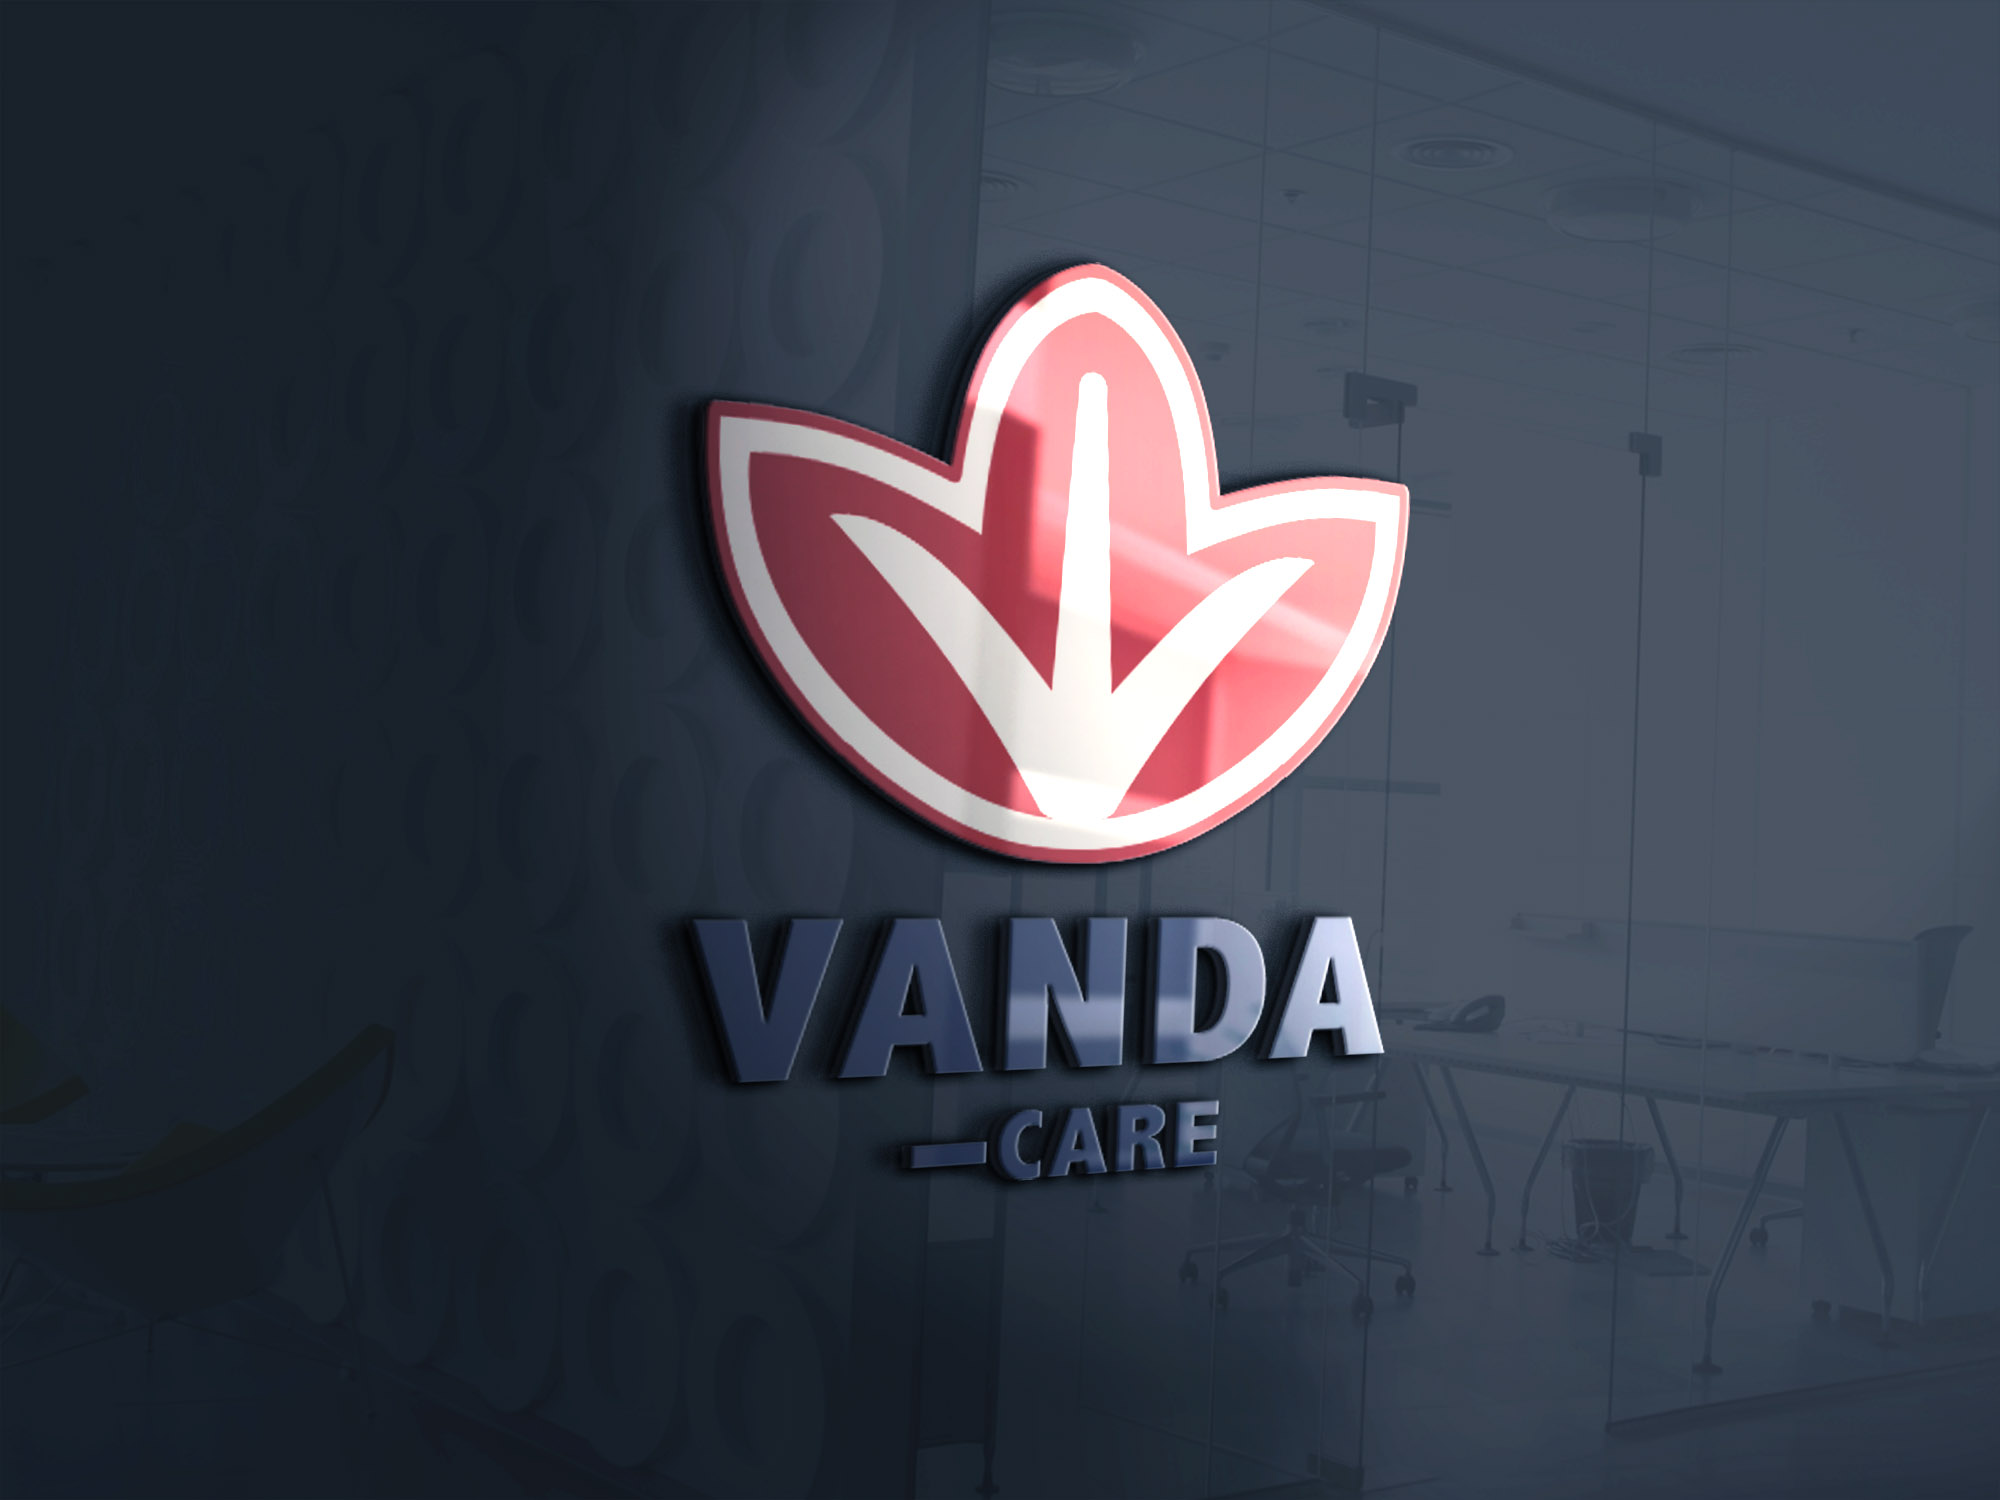 موك أب تصميم شعار فاندا كير شركة سمارت للمستحضرات الطبية والتجميل